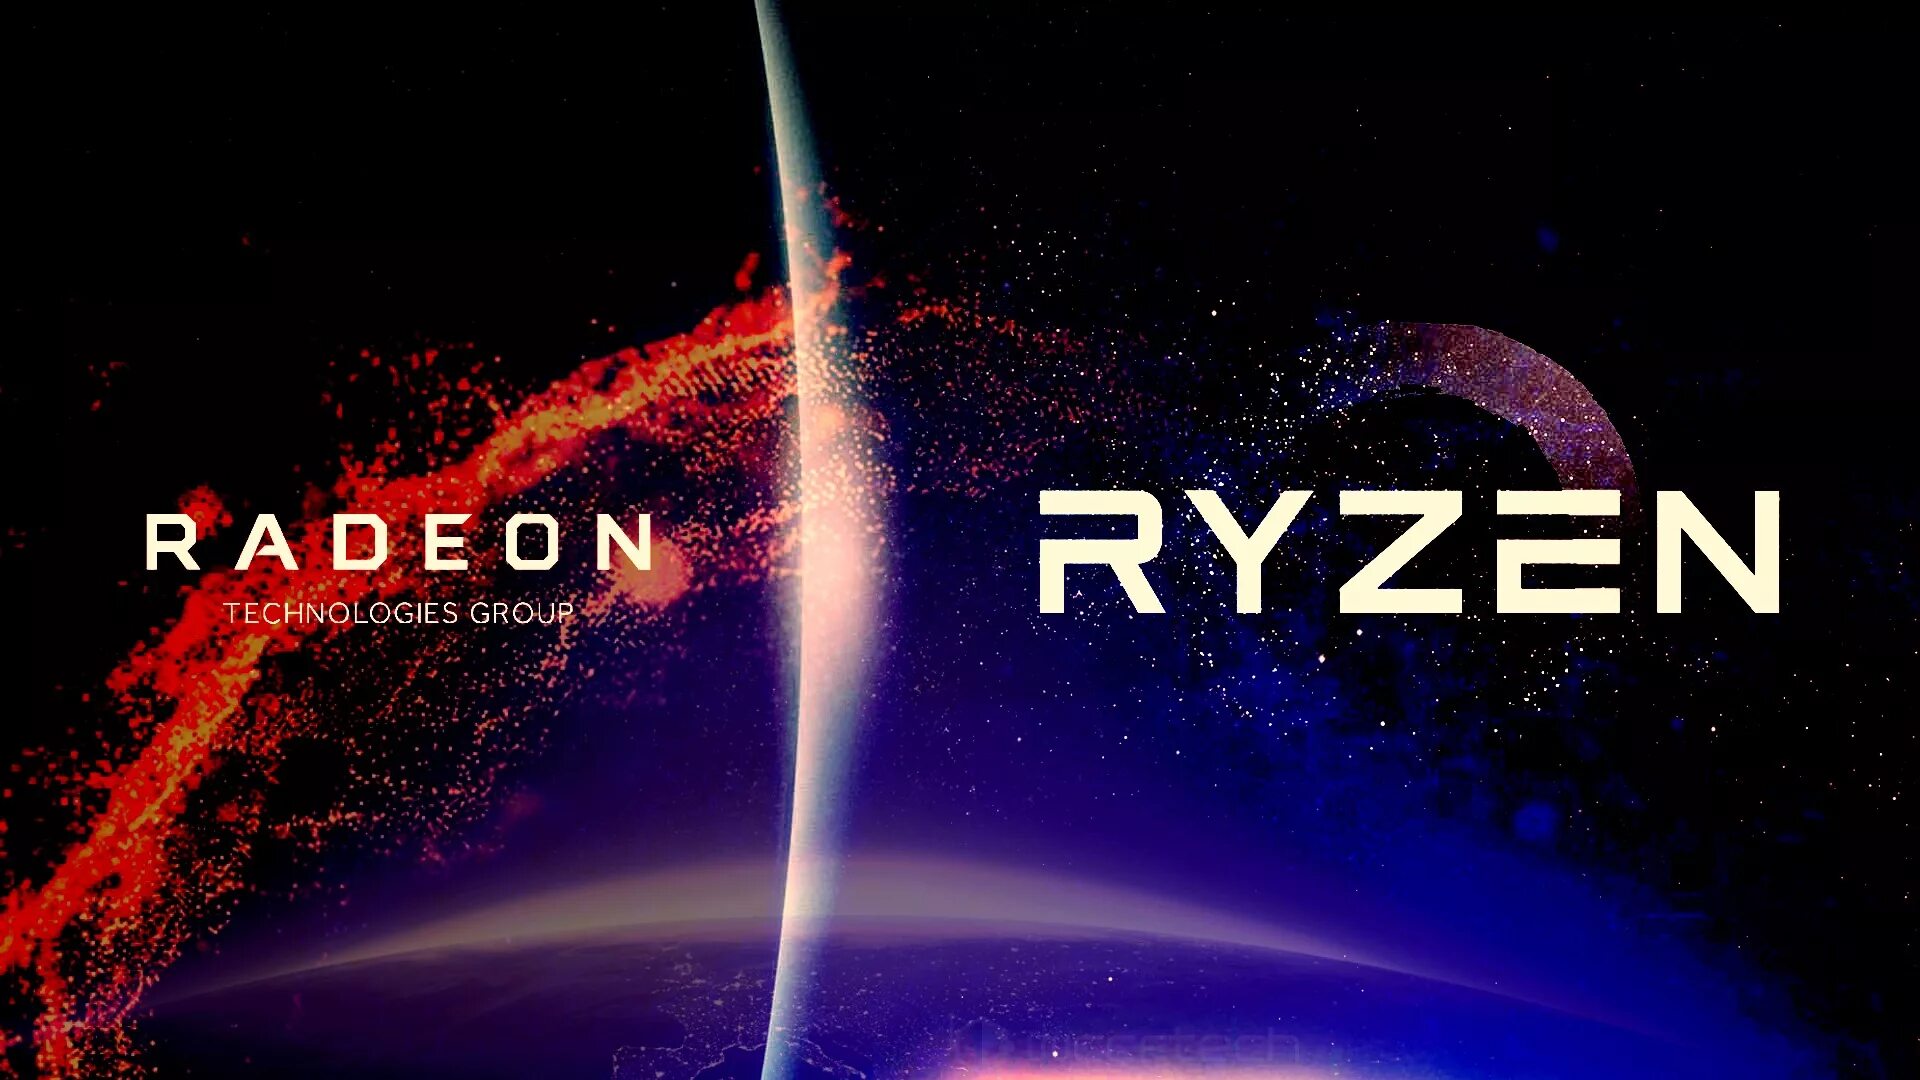 Amd 1920x1080. AMD Ryzen 1920 на 1080. AMD обои. Обои AMD Ryzen Radeon. Логотип AMD Ryzen Radeon.